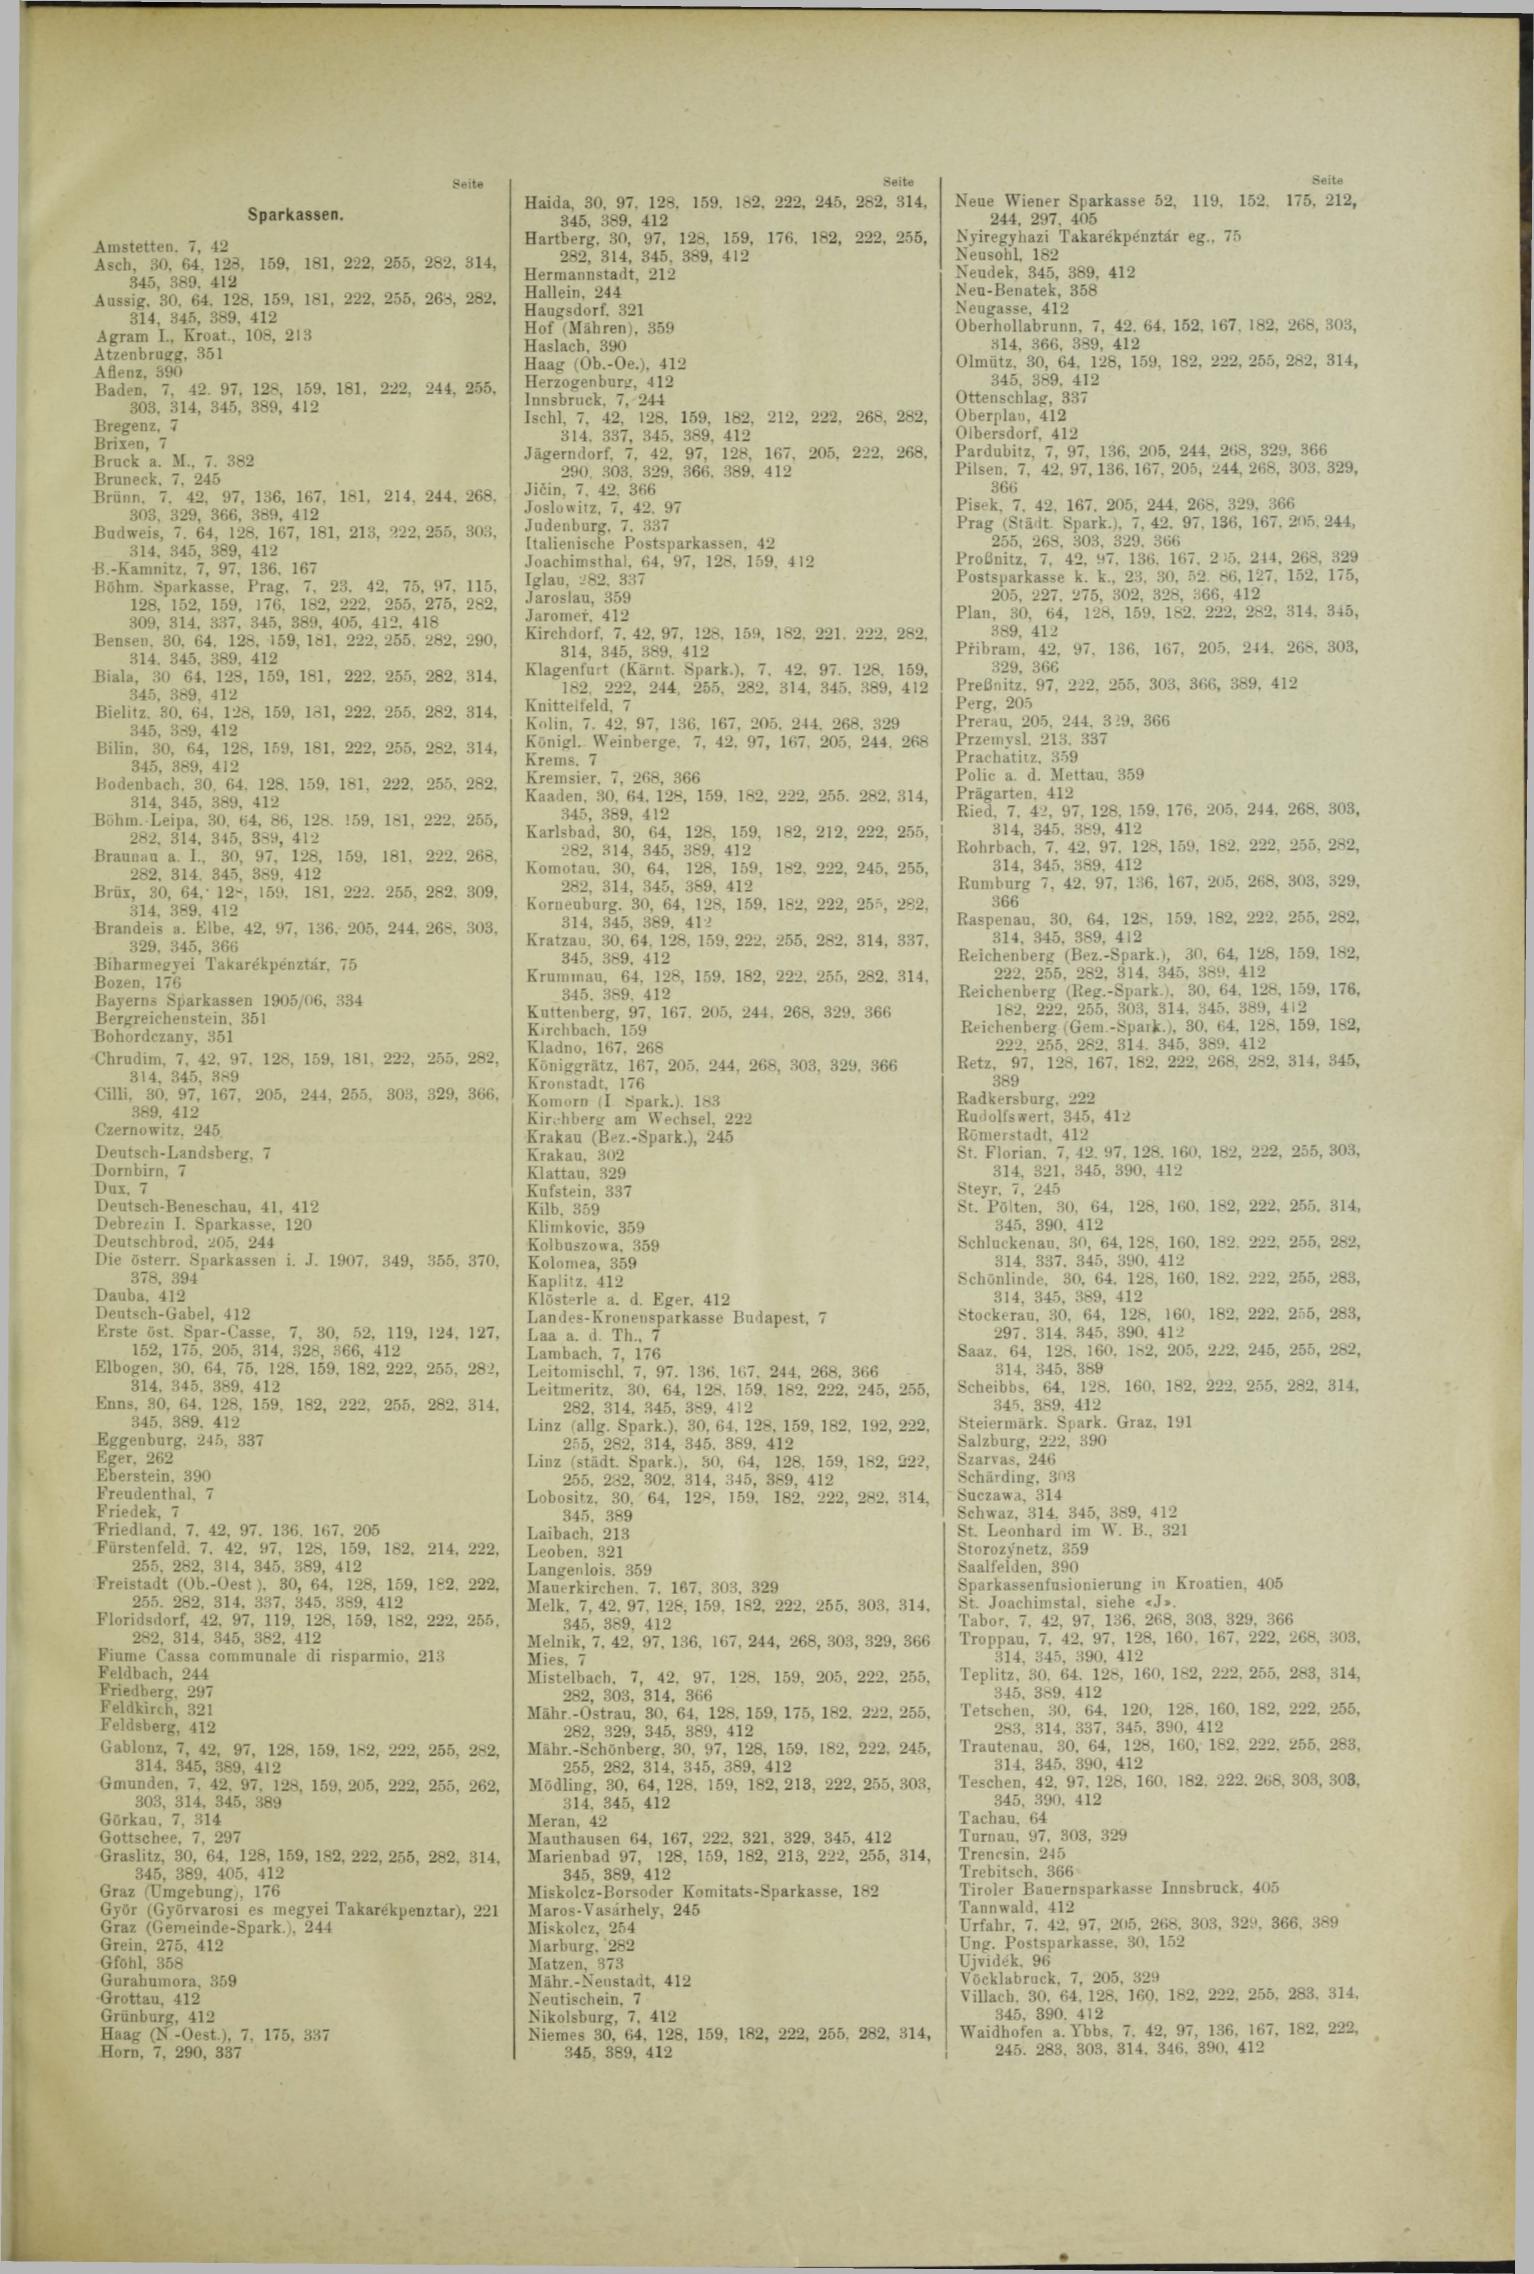 Der Tresor 17.10.1908 - Seite 11